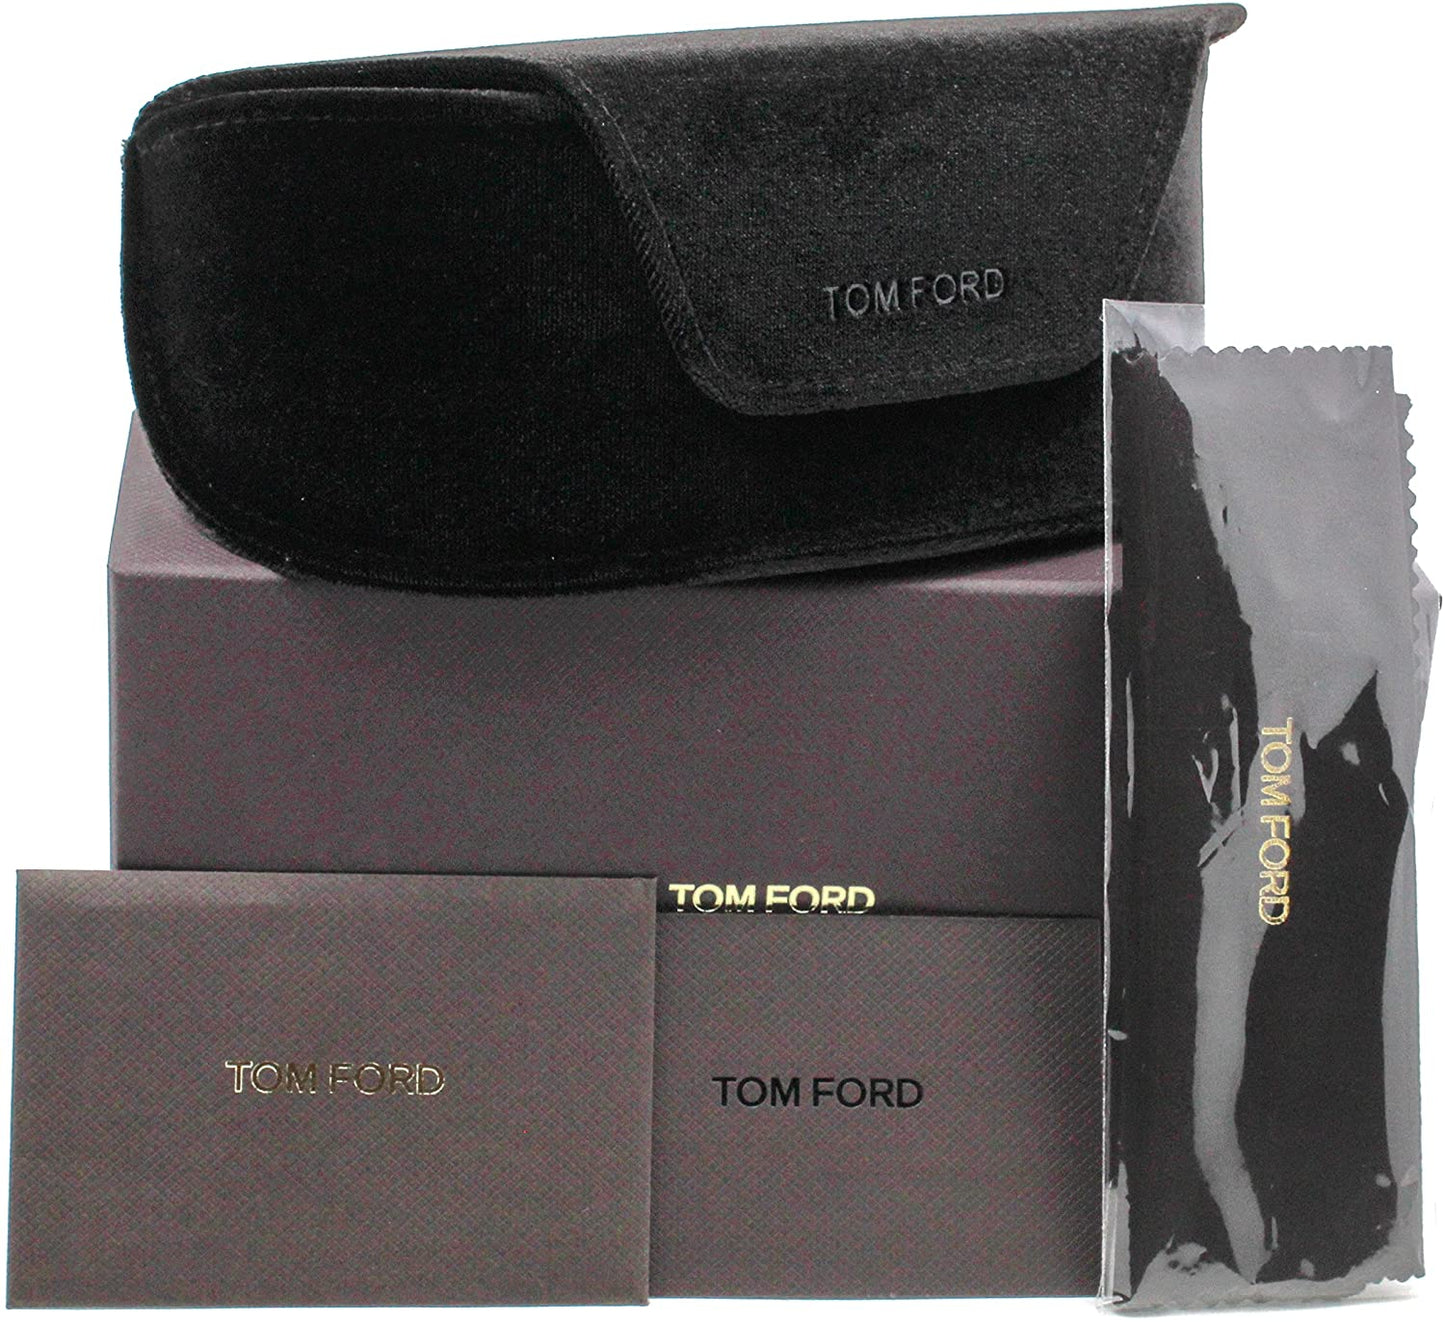 Tom Ford FT5374-020-54  New Eyeglasses